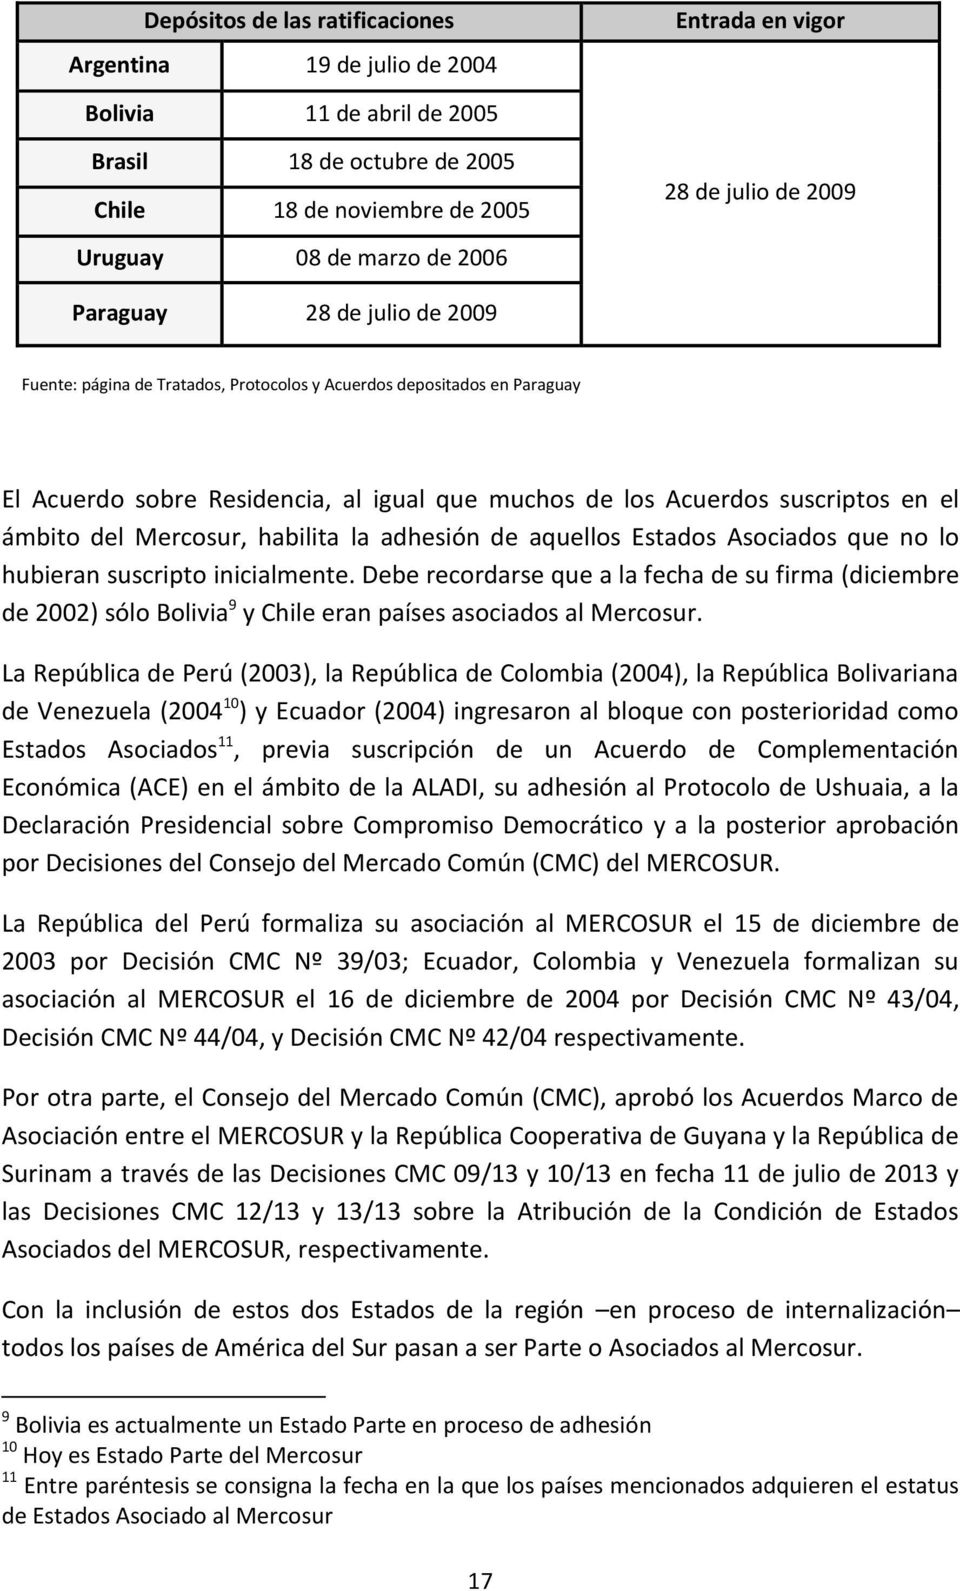 ámbito del Mercosur, habilita la adhesión de aquellos Estados Asociados que no lo hubieran suscripto inicialmente.